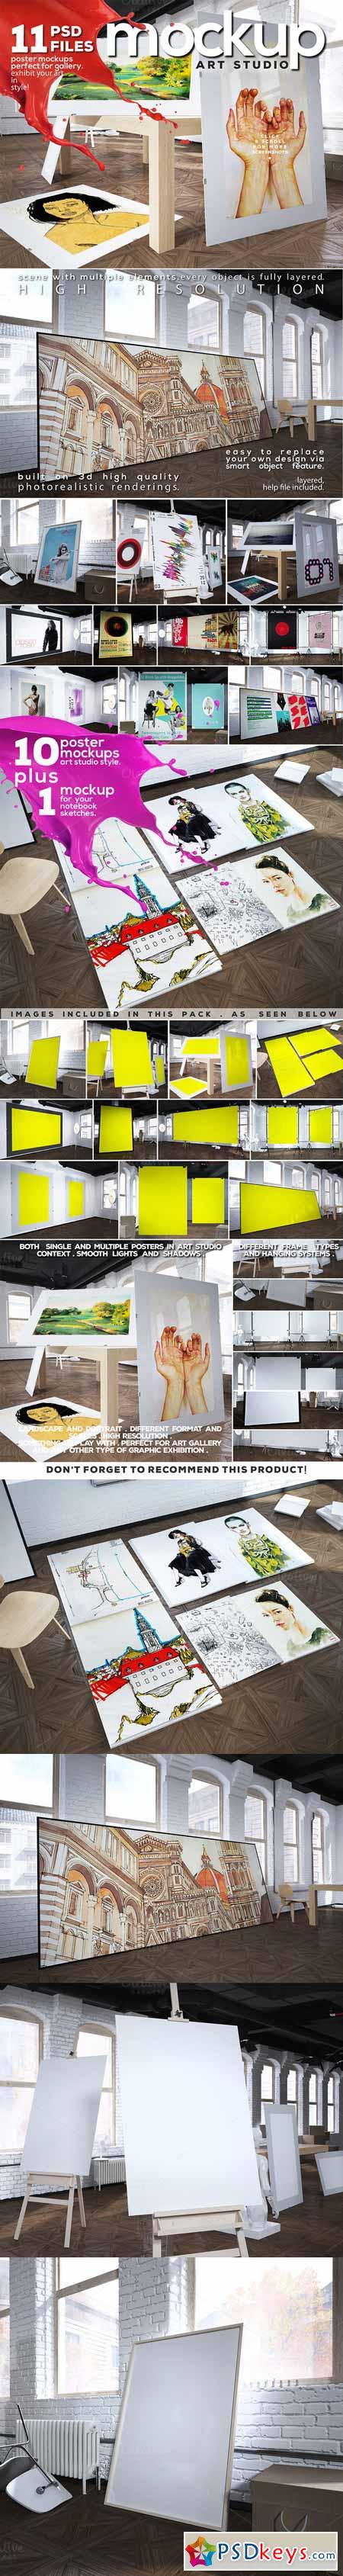 Art Studio-Poster Mock-up vol.8 265135